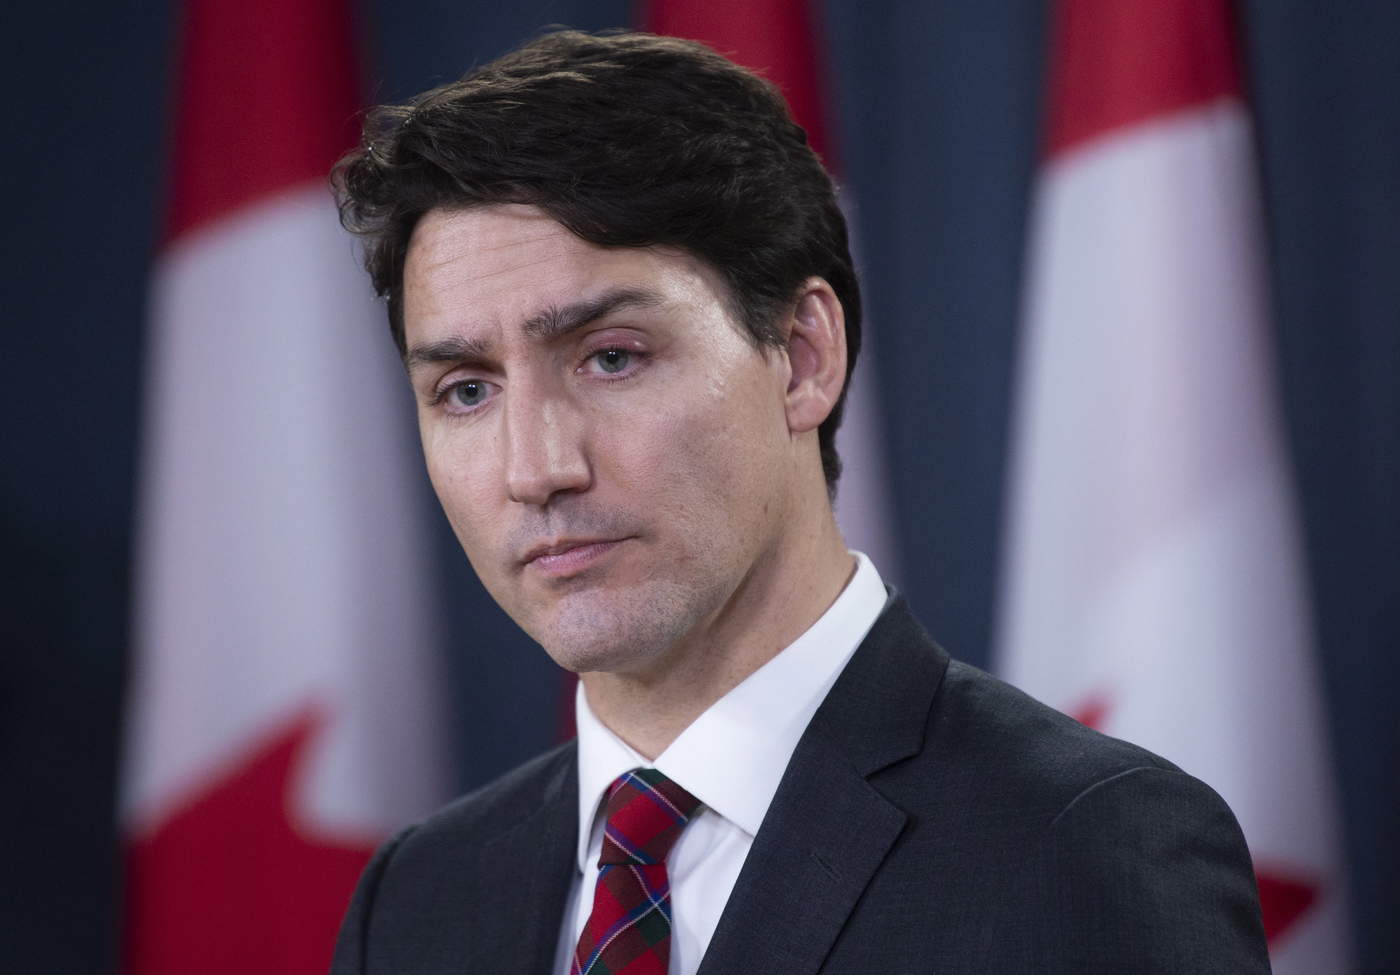 China critica declaraciones de Trudeau tras condena a canadiense. Noticias en tiempo real